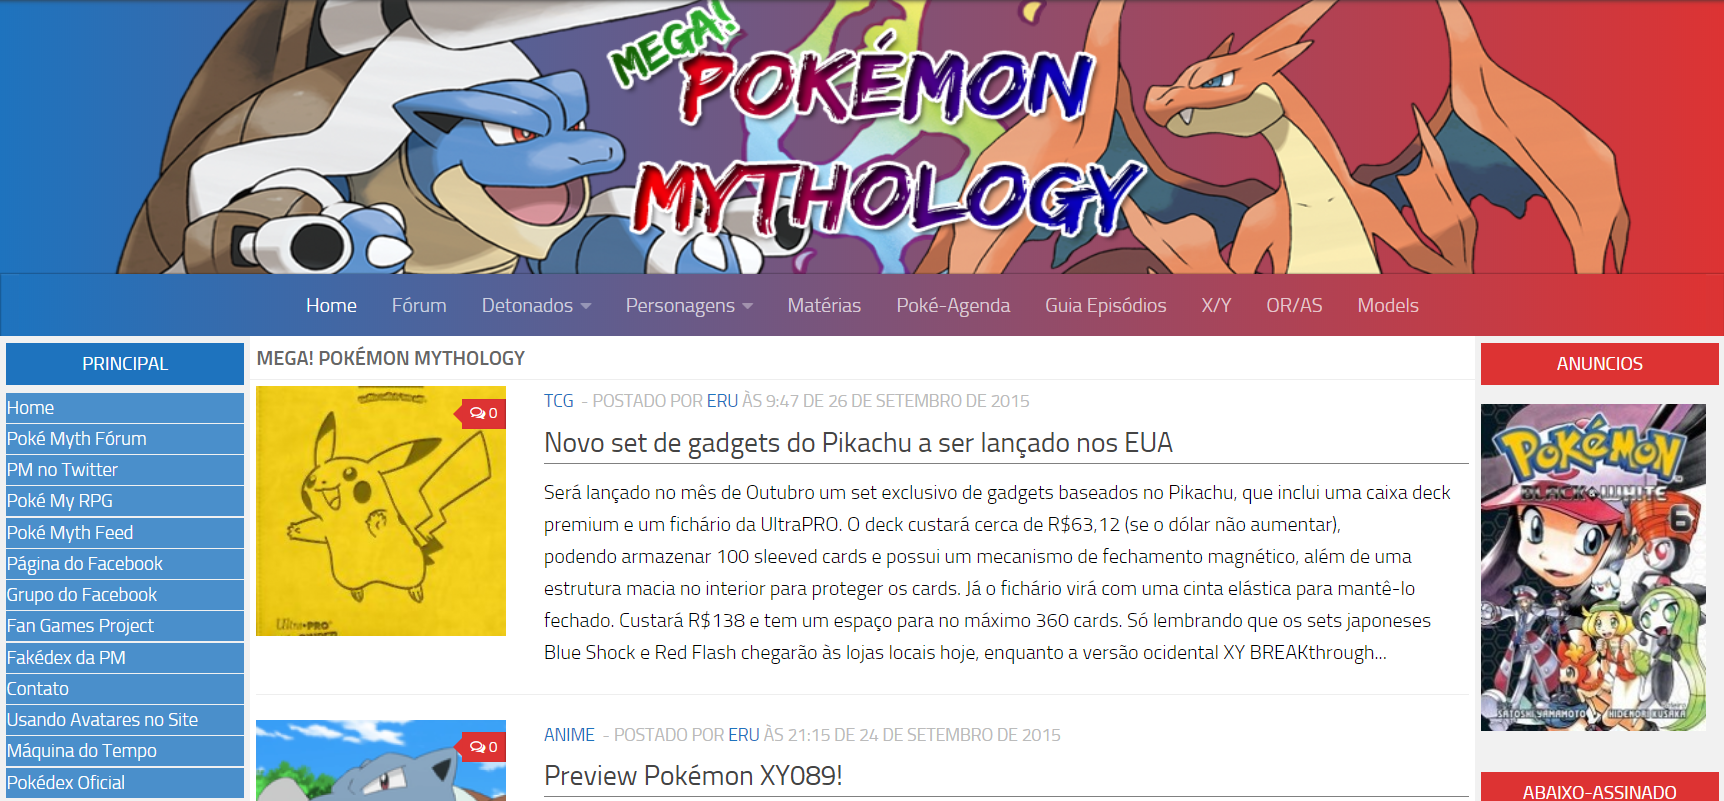 Aniversário Pokémon Mythology + Canal no Telegram – Pokémon Mythology